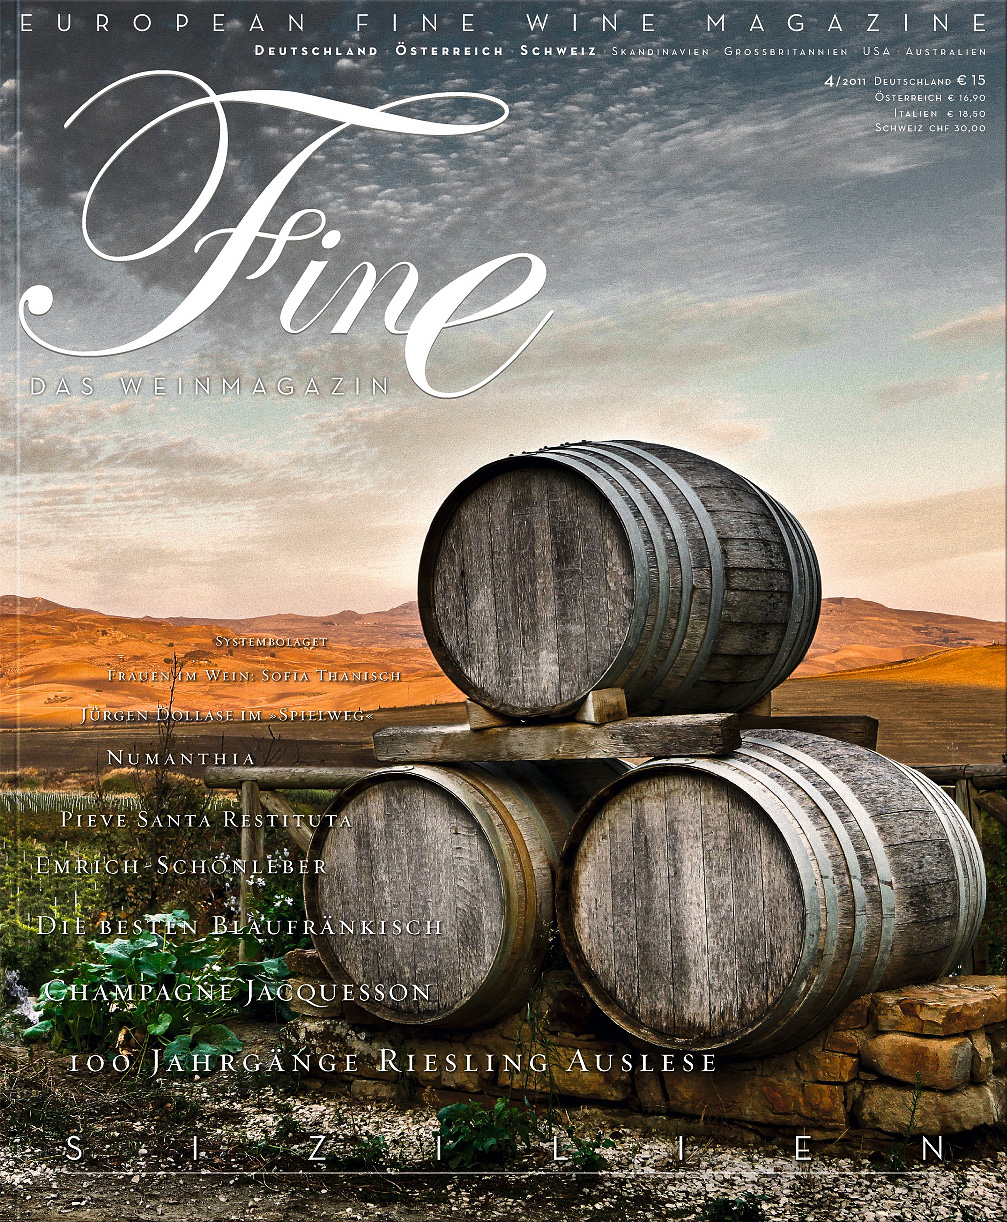 FINE Das Weinmagazin, 15. Ausgabe - 04/2011